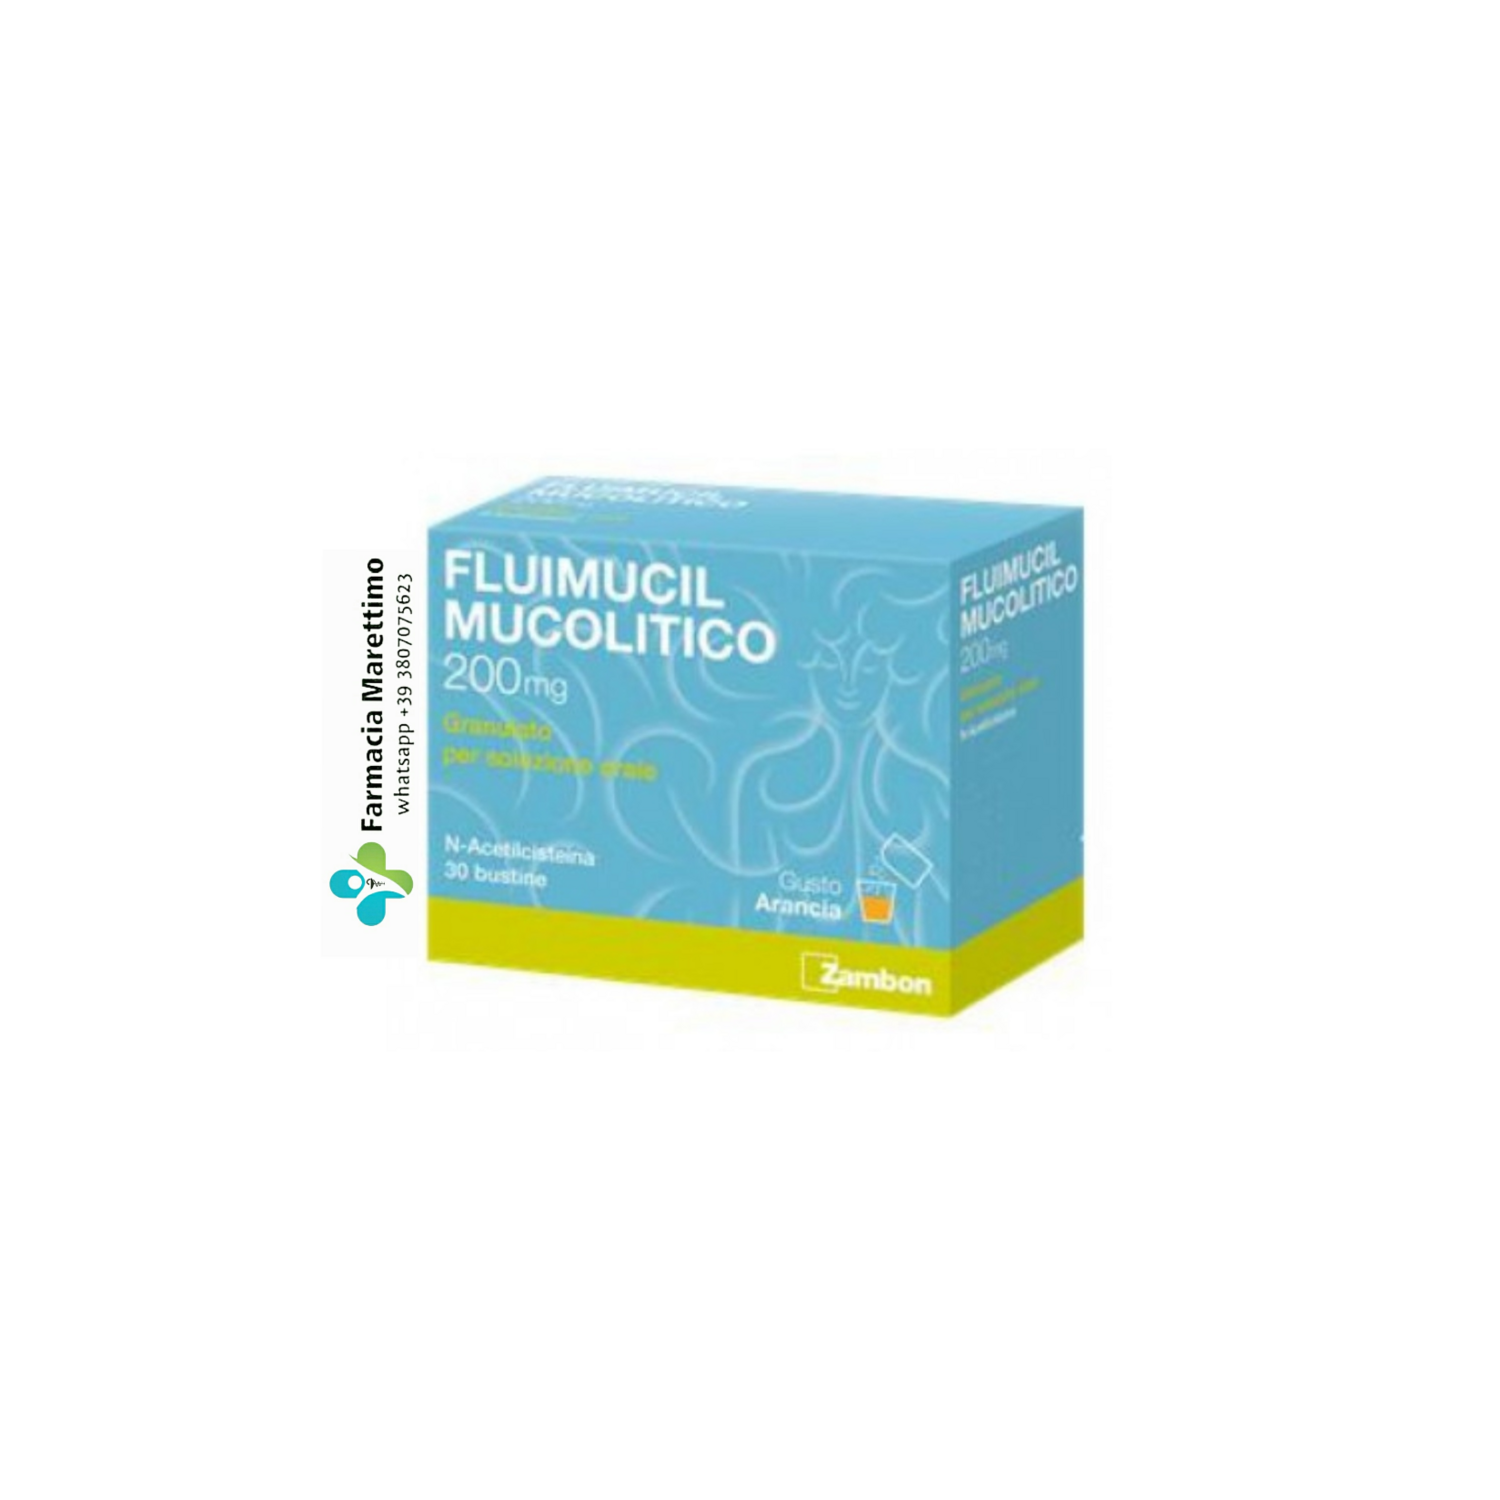 Fluimicil Mucolitico 200mg granulato 30 bustine (soluzione orale per trattamento affezioni respiratorie)